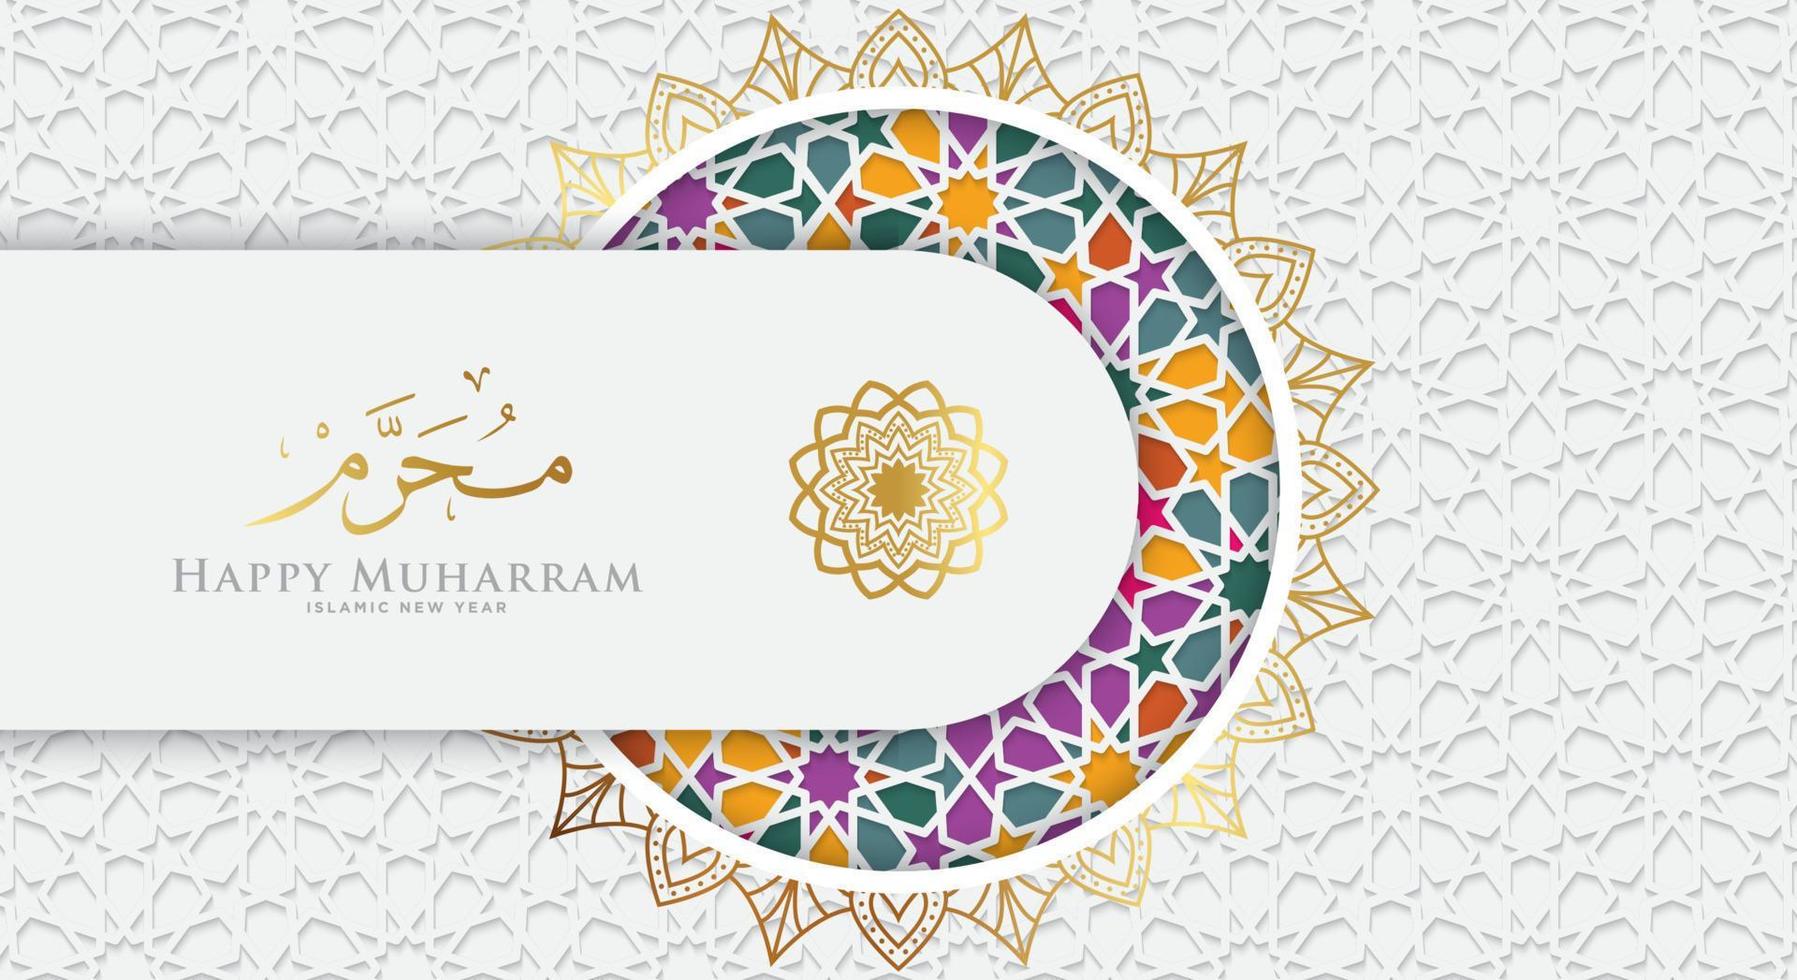 feliz muharram, el año nuevo islámico, fondo islámico de lujo blanco con coloridos detalles ornamentales islámicos de mosaico. vector